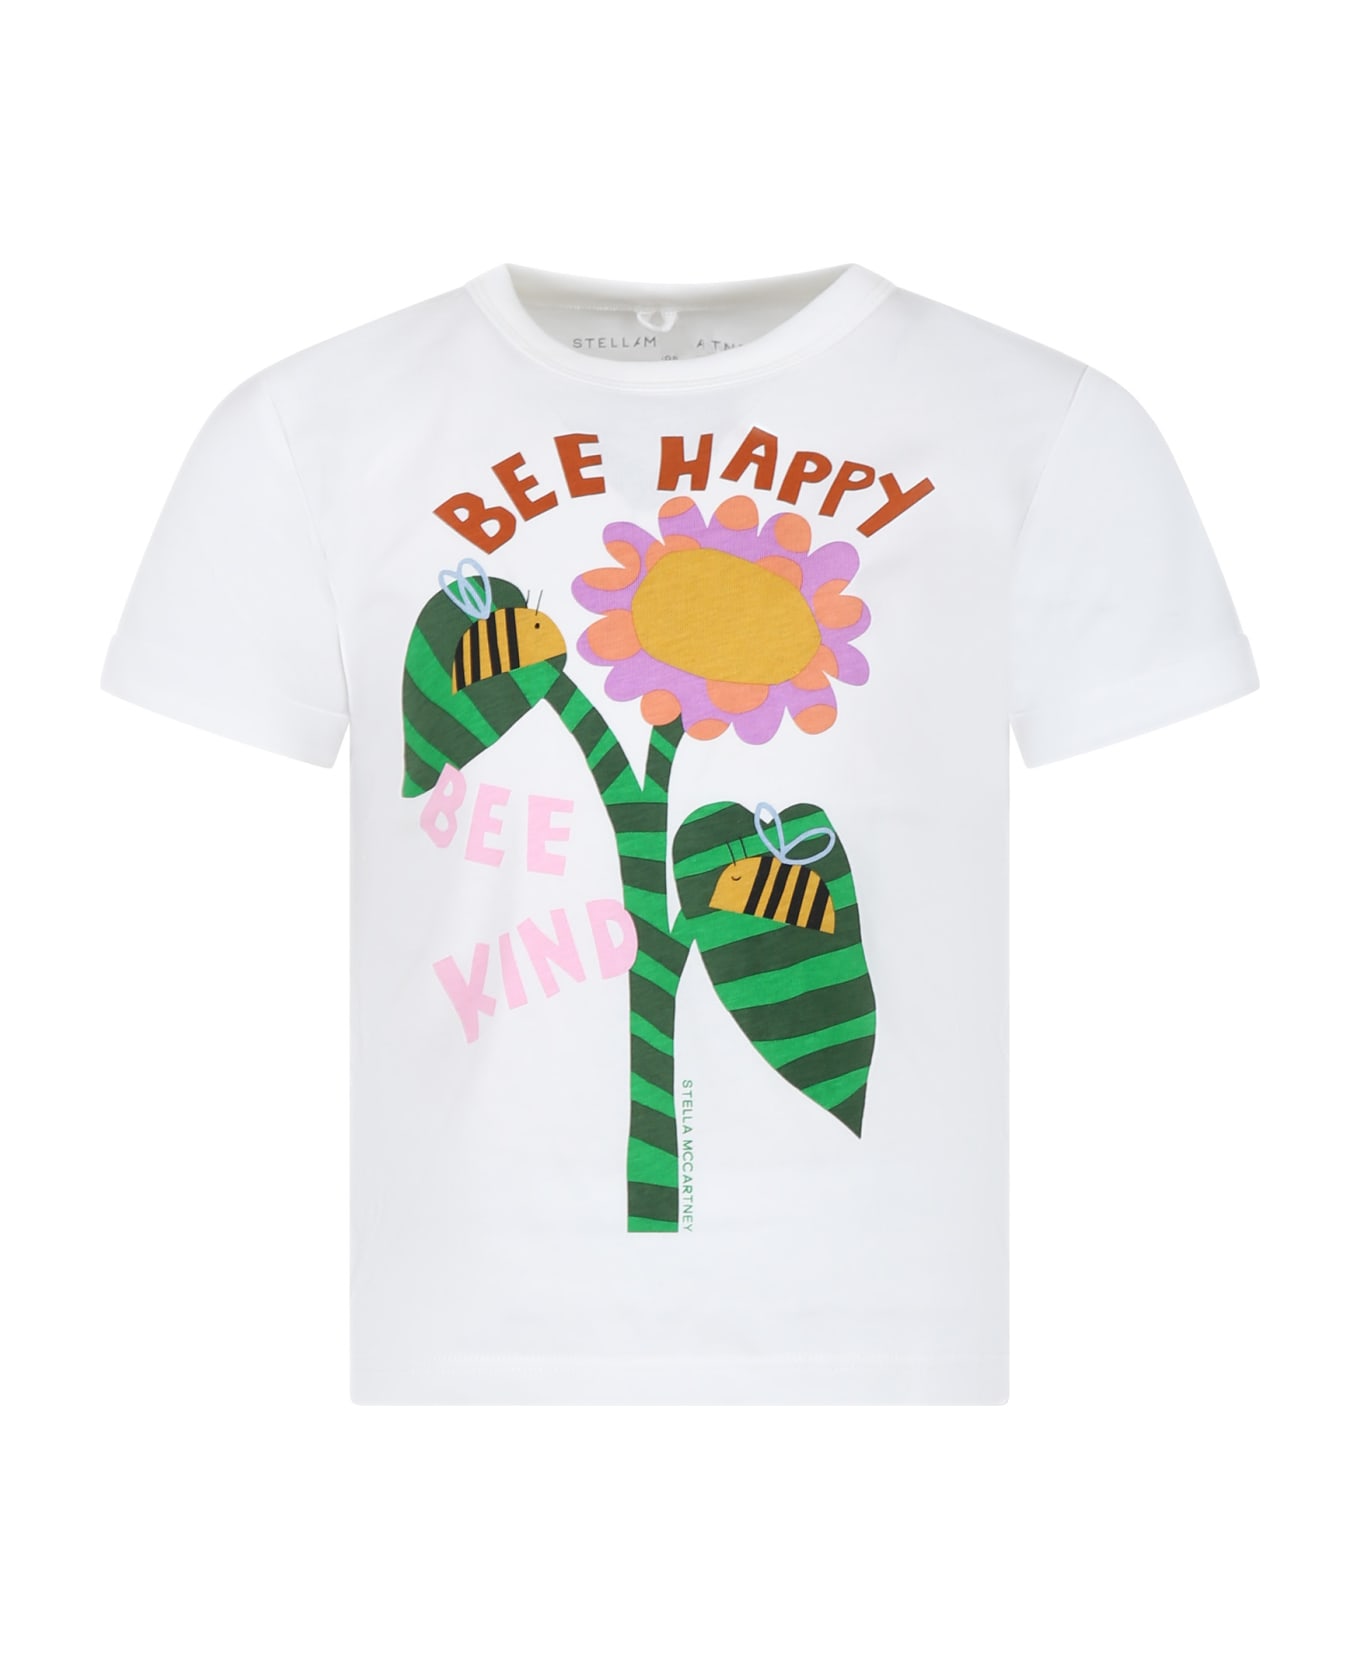 Stella McCartney Kids White T-shirt For Girl With Flower Print - White